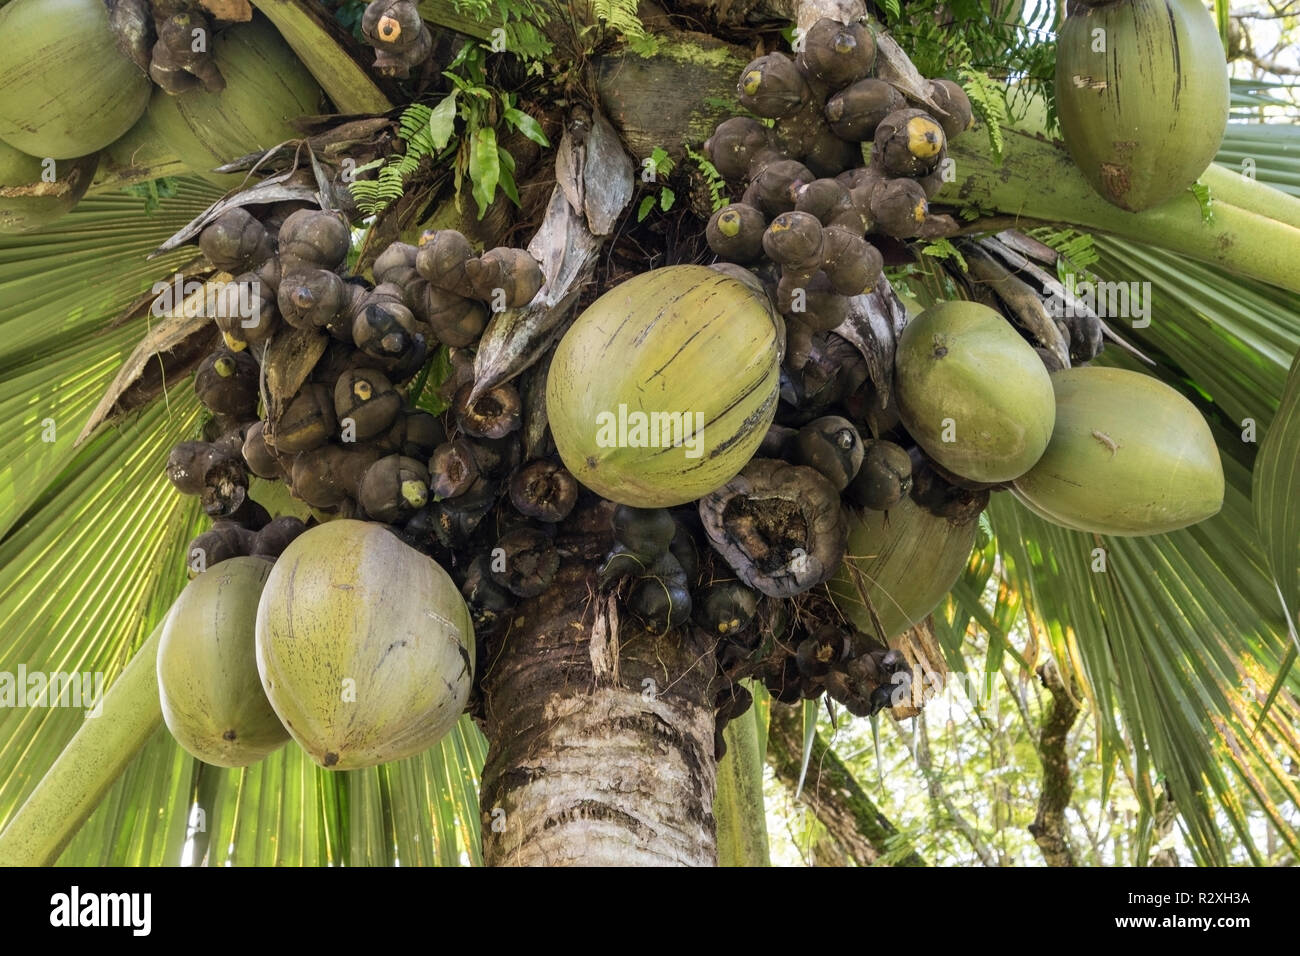 Coco de Mer Lodoicea maldivica zeigt größte Samen und Früchte in der Welt, Mahe, Seychellen Stockfoto